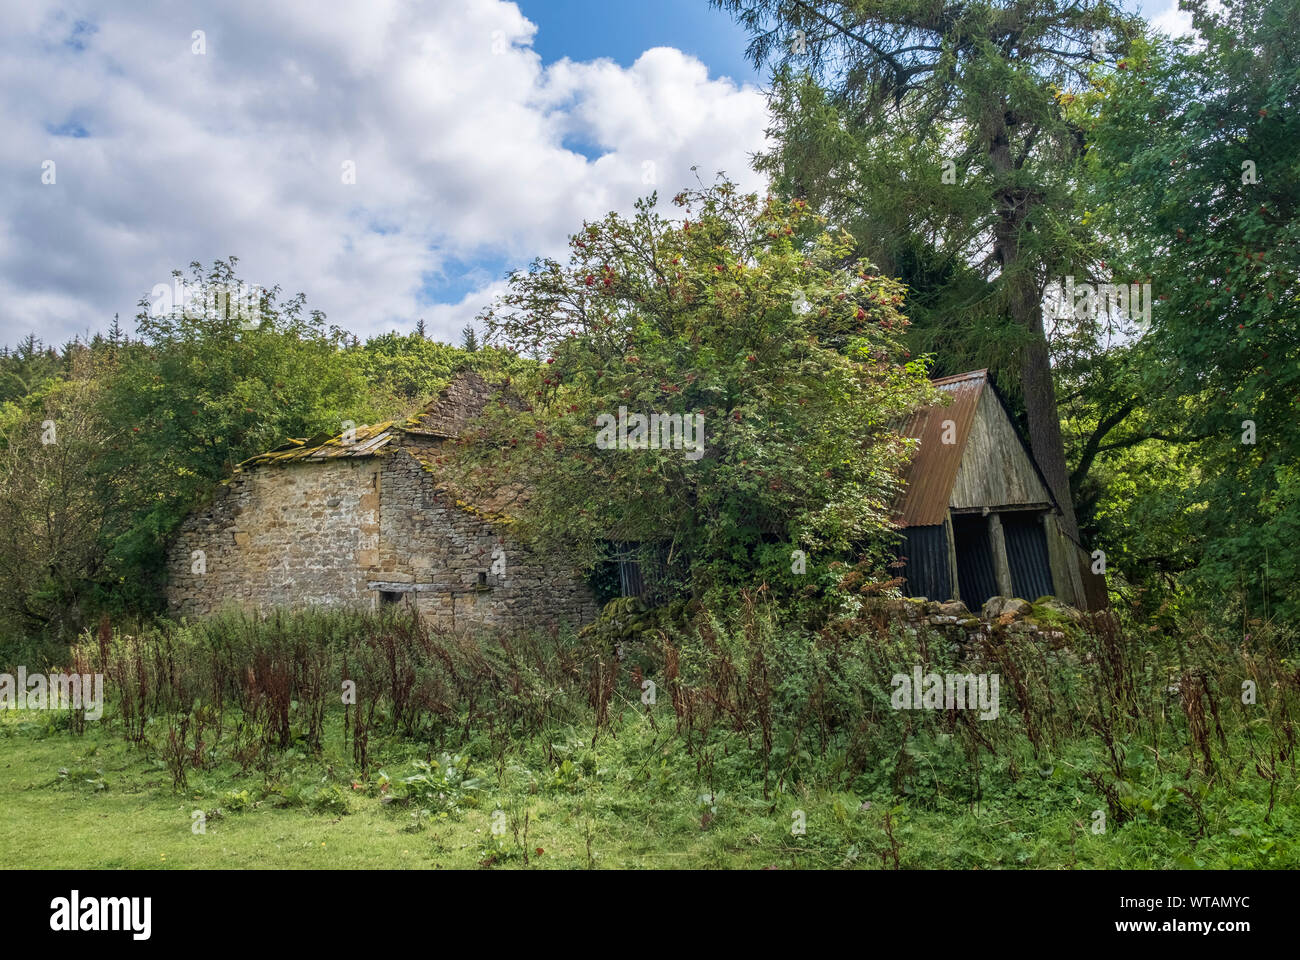 Las ruinas de una casa en la campiña inglesa se devuelve a la naturaleza -abandonados y degradados ruina de una granja y establo cubierto por vegetación y árboles Foto de stock